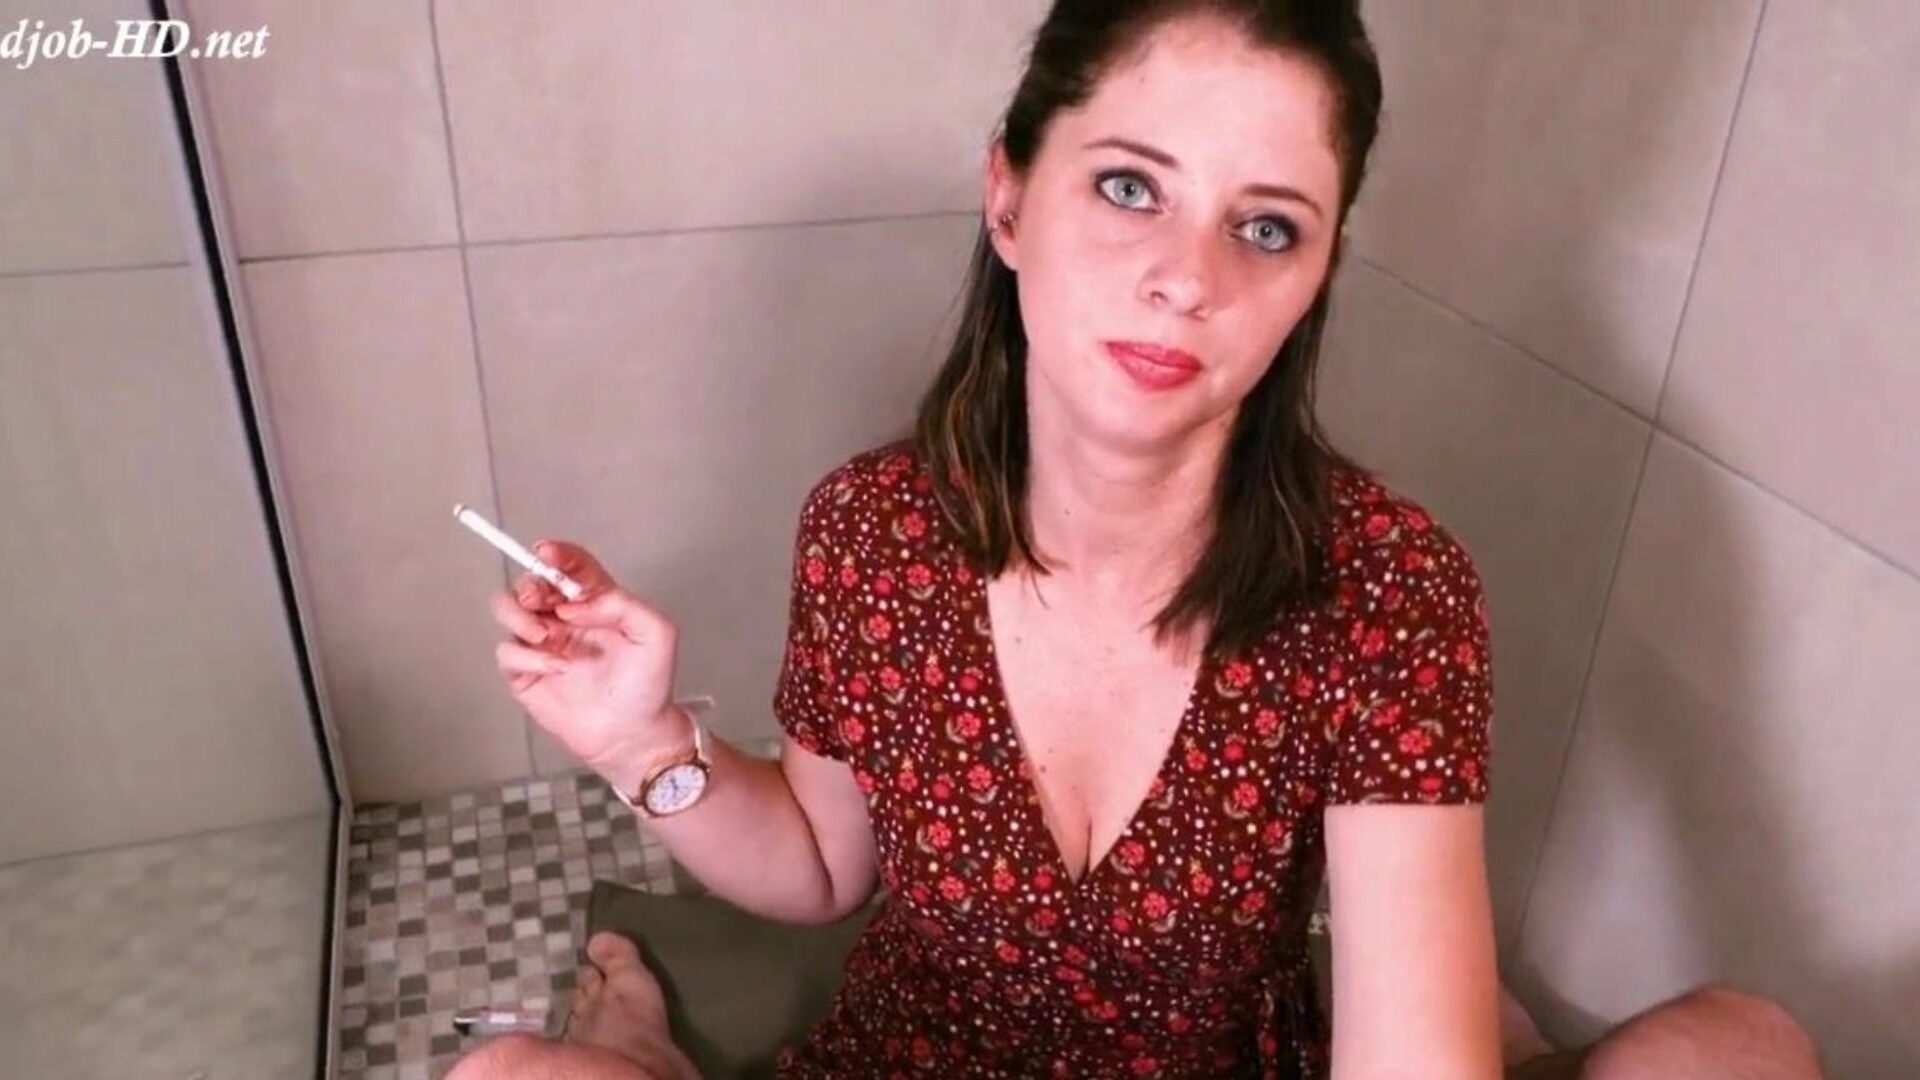 ρολόι χειρός κάπνισμα χέρι δουλειά καθαρό cum στο ρολόι με ... ρολόι ρολόι κάπνισμα χέρι δουλειά καθαρό cum στο ρολόι με στόμα ταινία σκηνή στο xhamster - η απόλυτη μάζα της δωρεάν για όλες τις μητέρες που θα ήθελα να γαμήσω και γυναικεία βίντεο hd porno tube